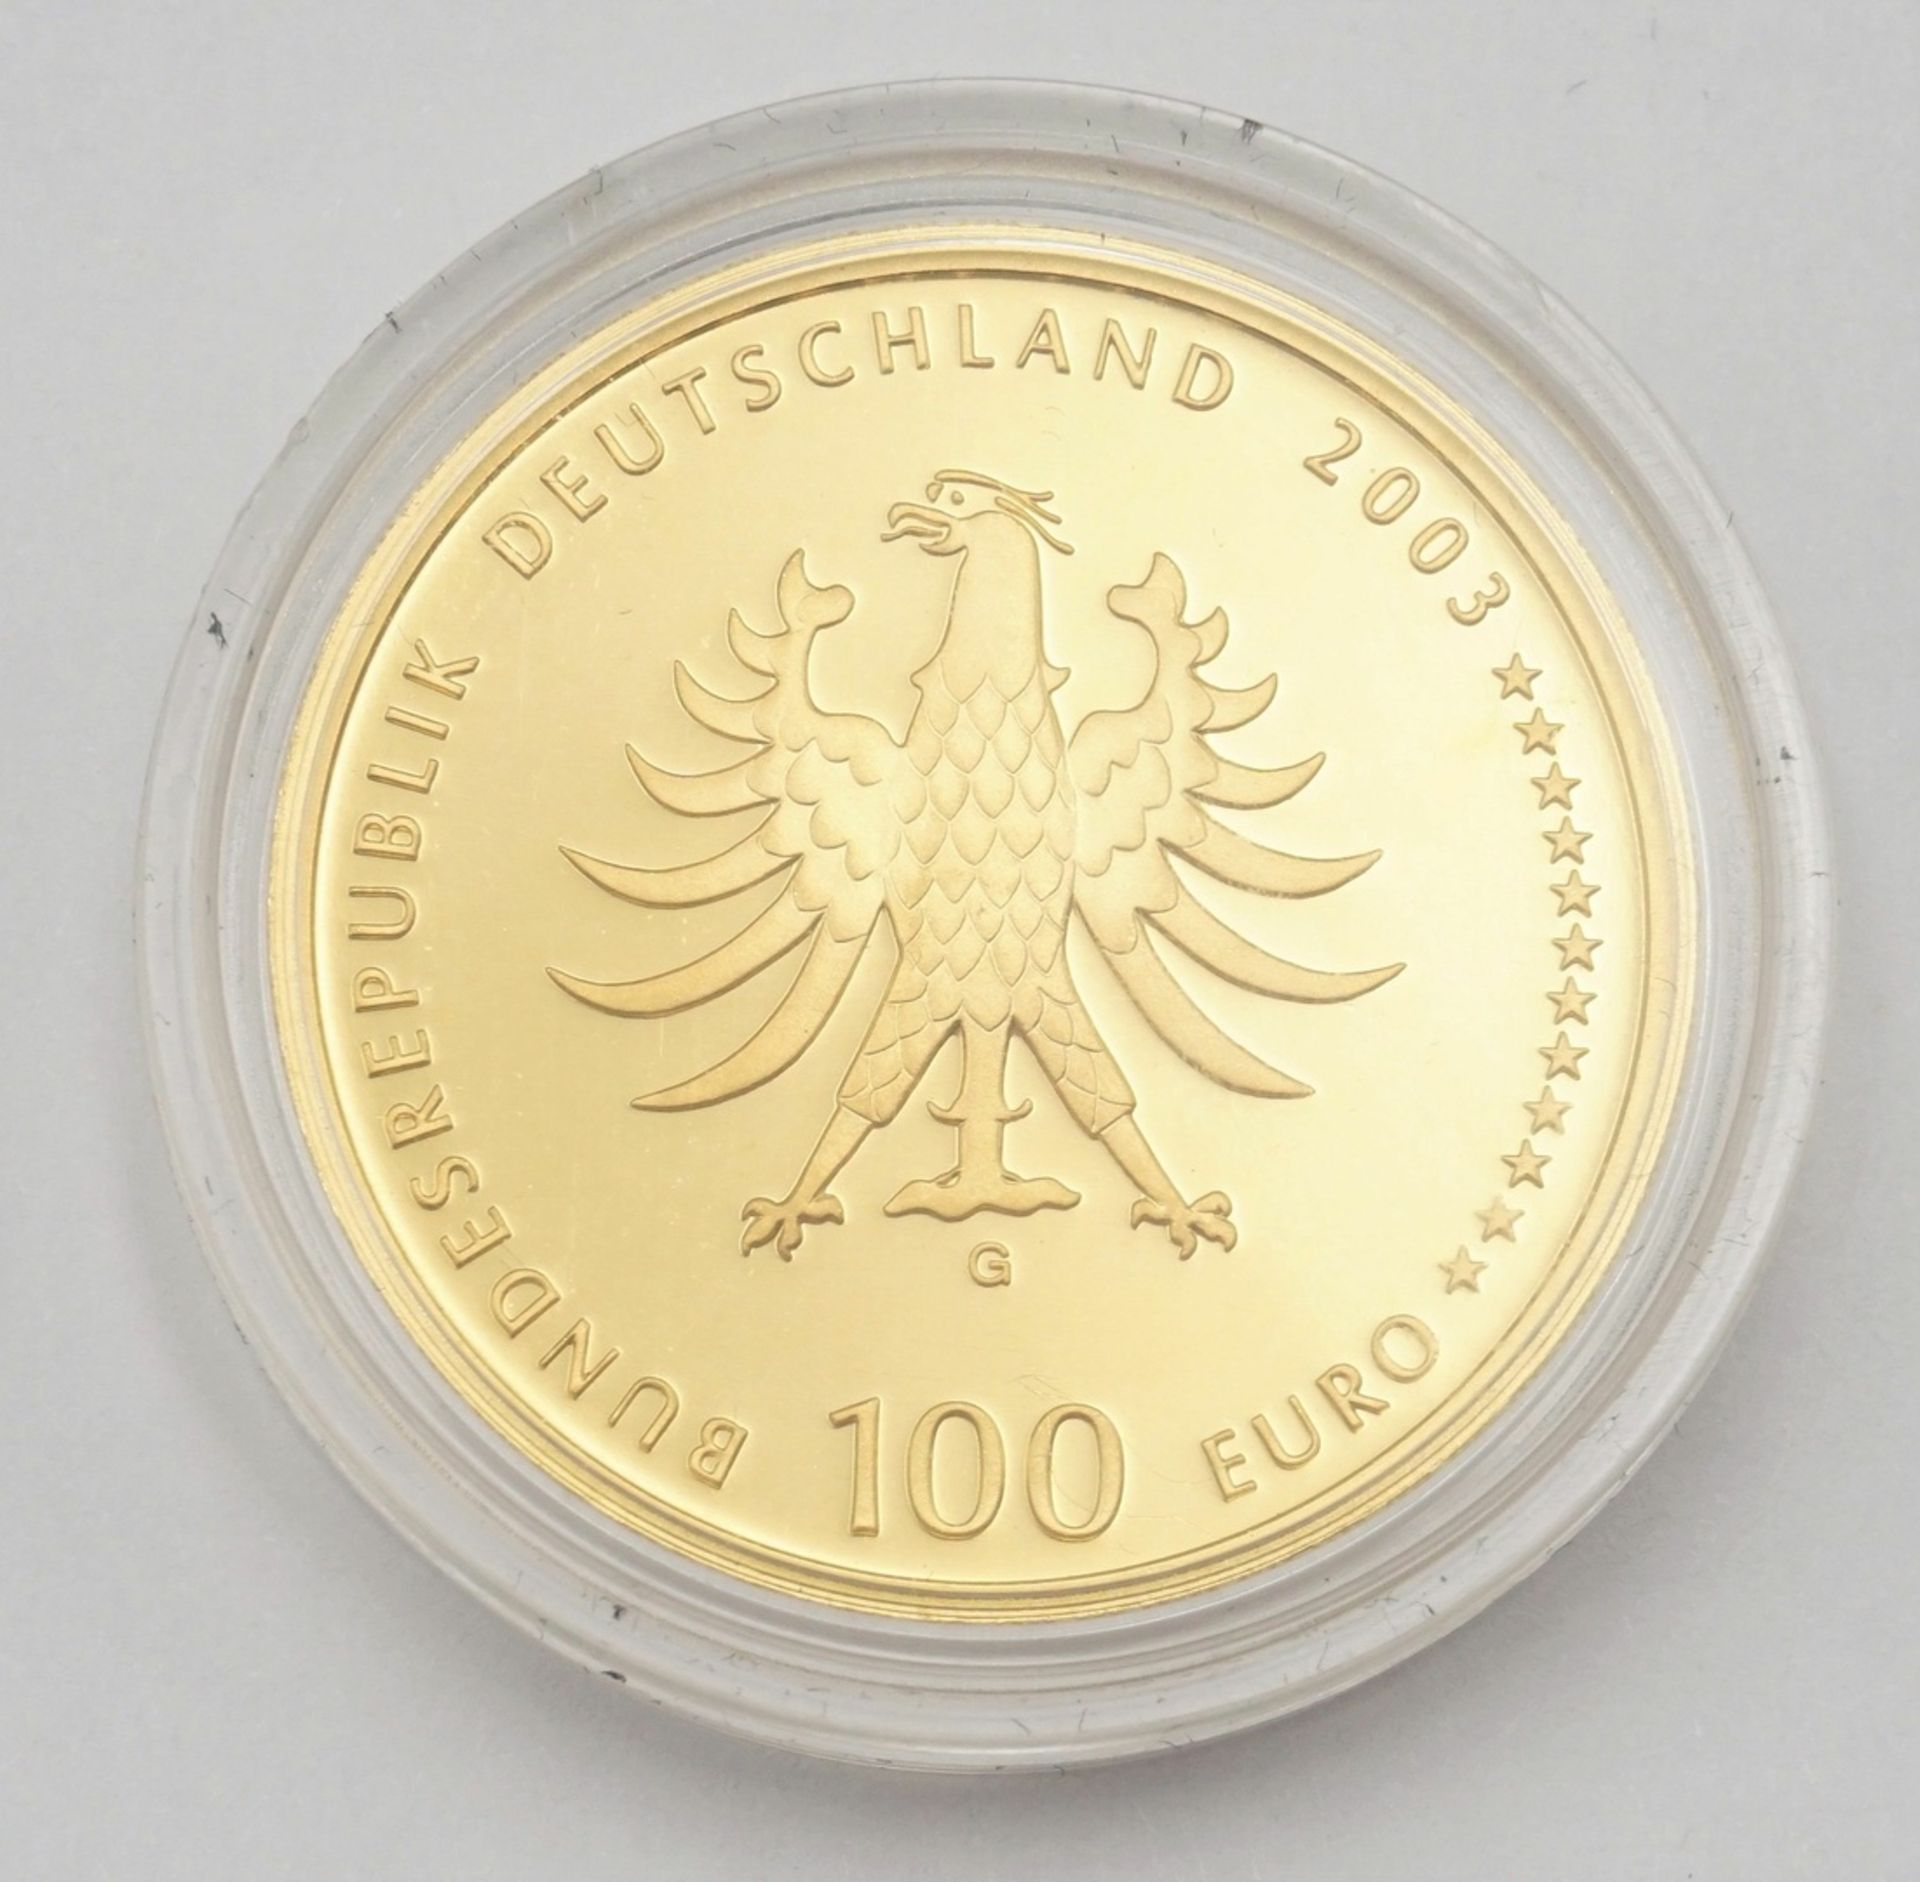 100 Euro-Goldmünze UNESCO-Weltkulturerbestadt Quedlinburg - Image 2 of 3